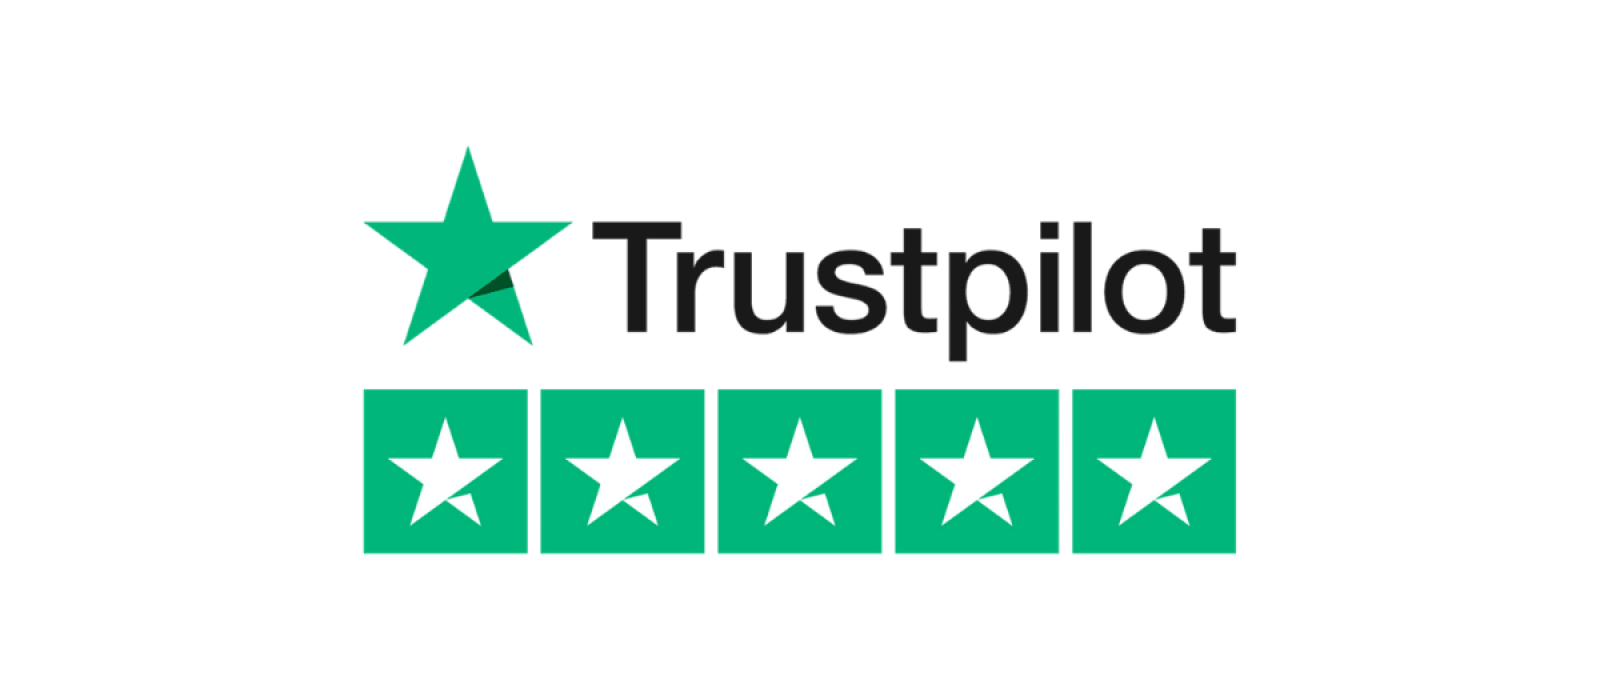 TrustPilot 5-Star Reviews for Beaming White